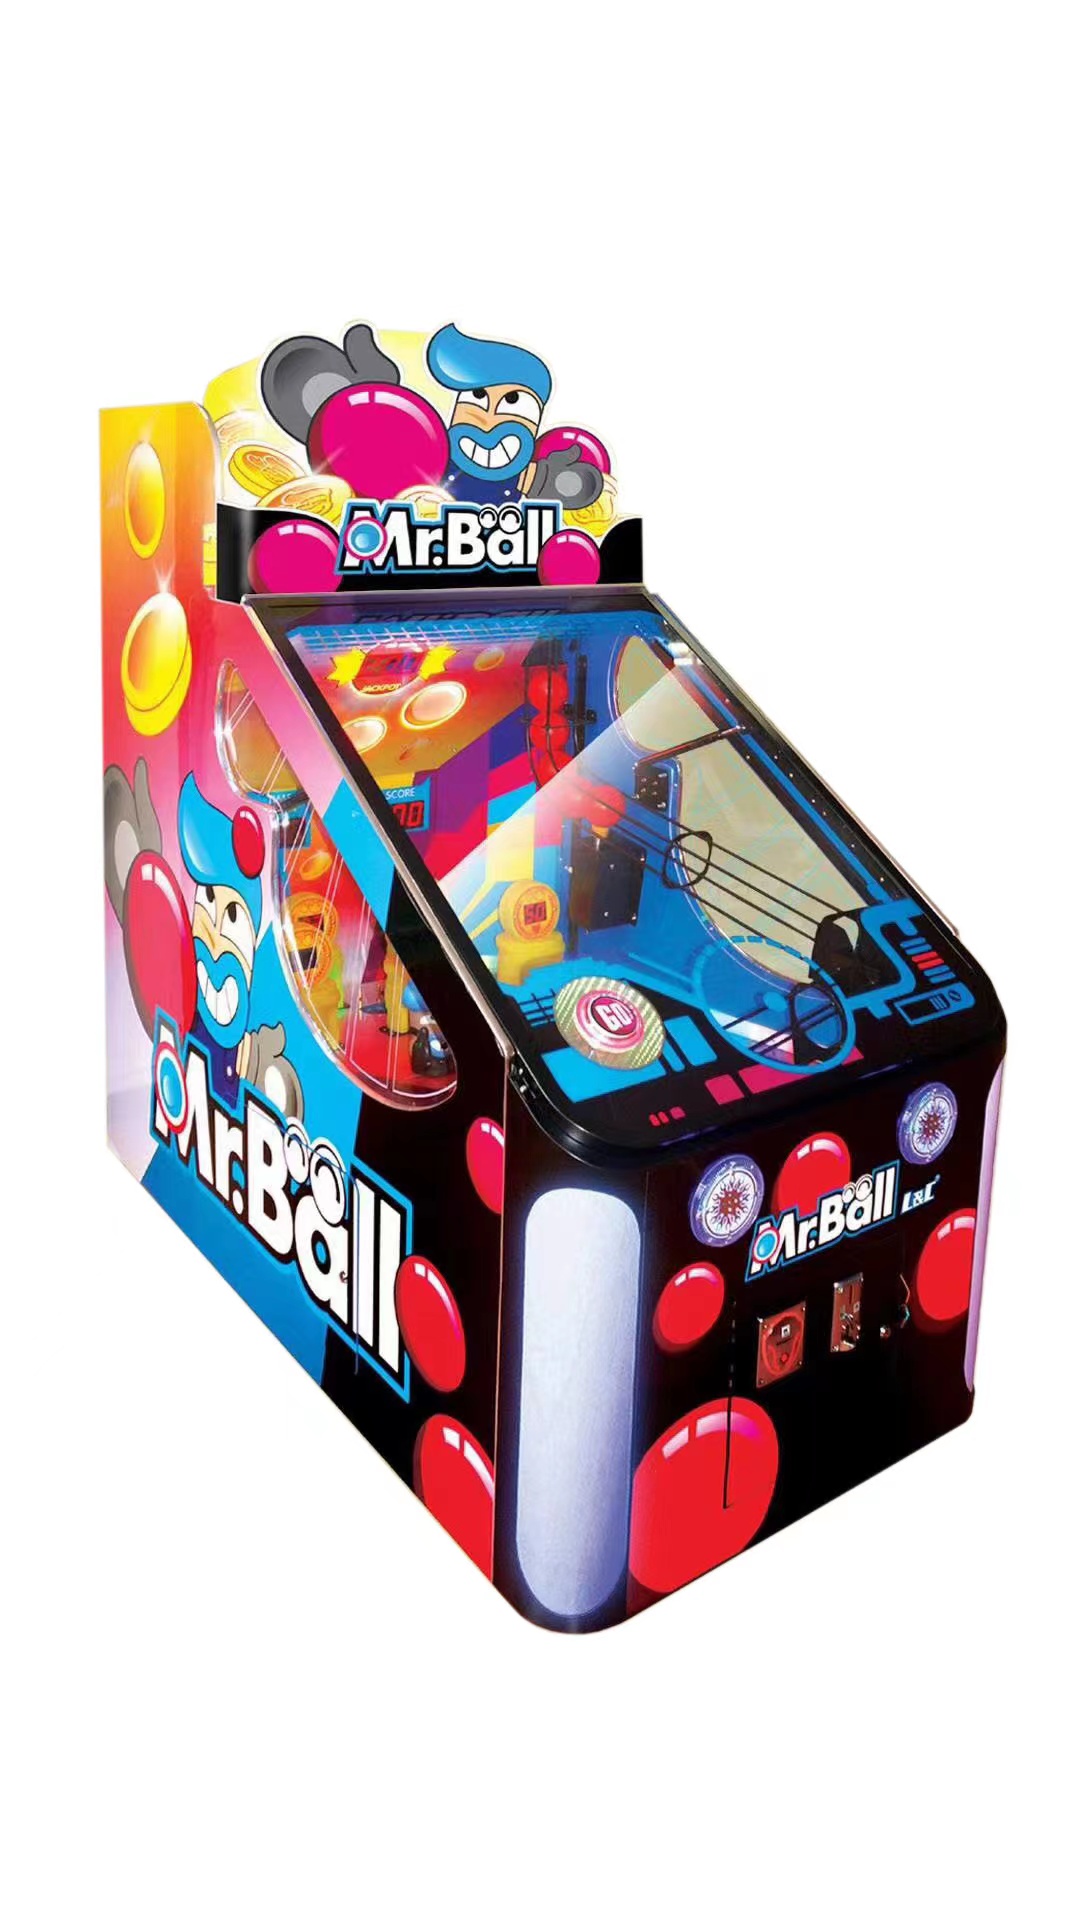 Mr. Ball Kids Arcade Ticket Redemption Game Machine for sale